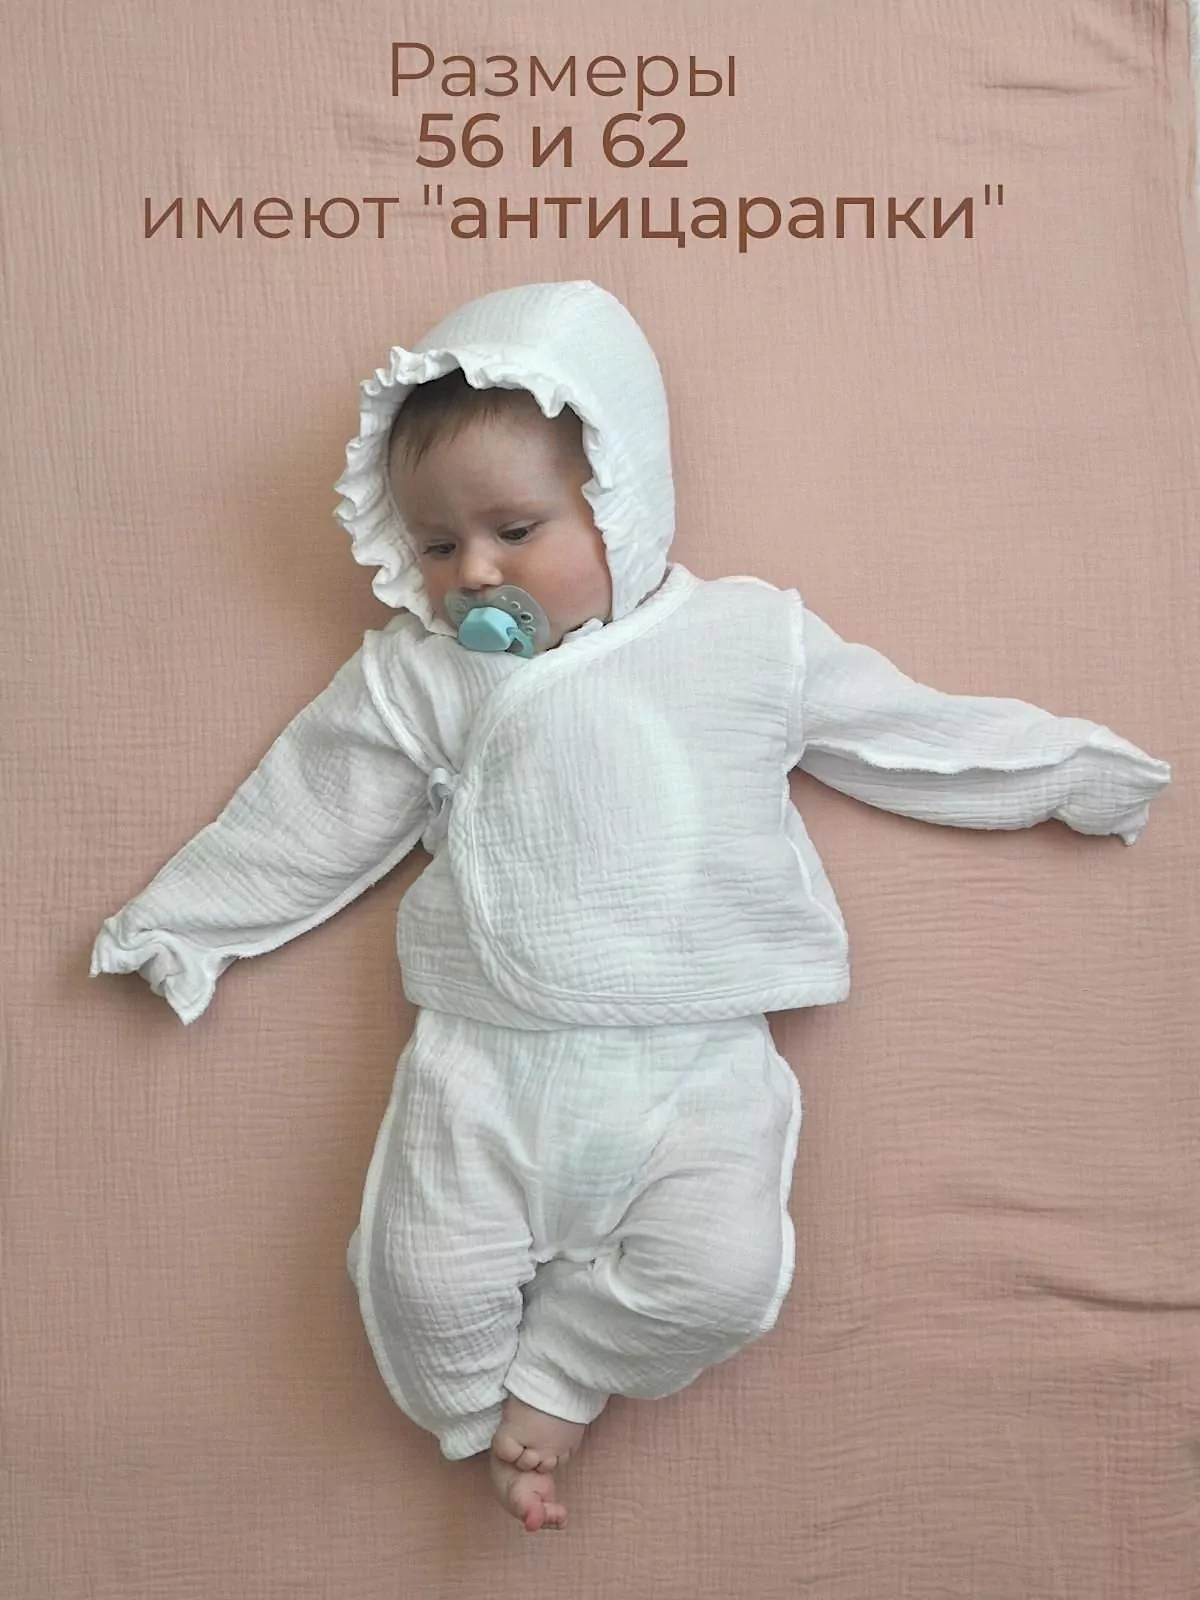 Ползунки и распашонка для новорожденного, сшитые своими руками :: бородино-молодежка.рф